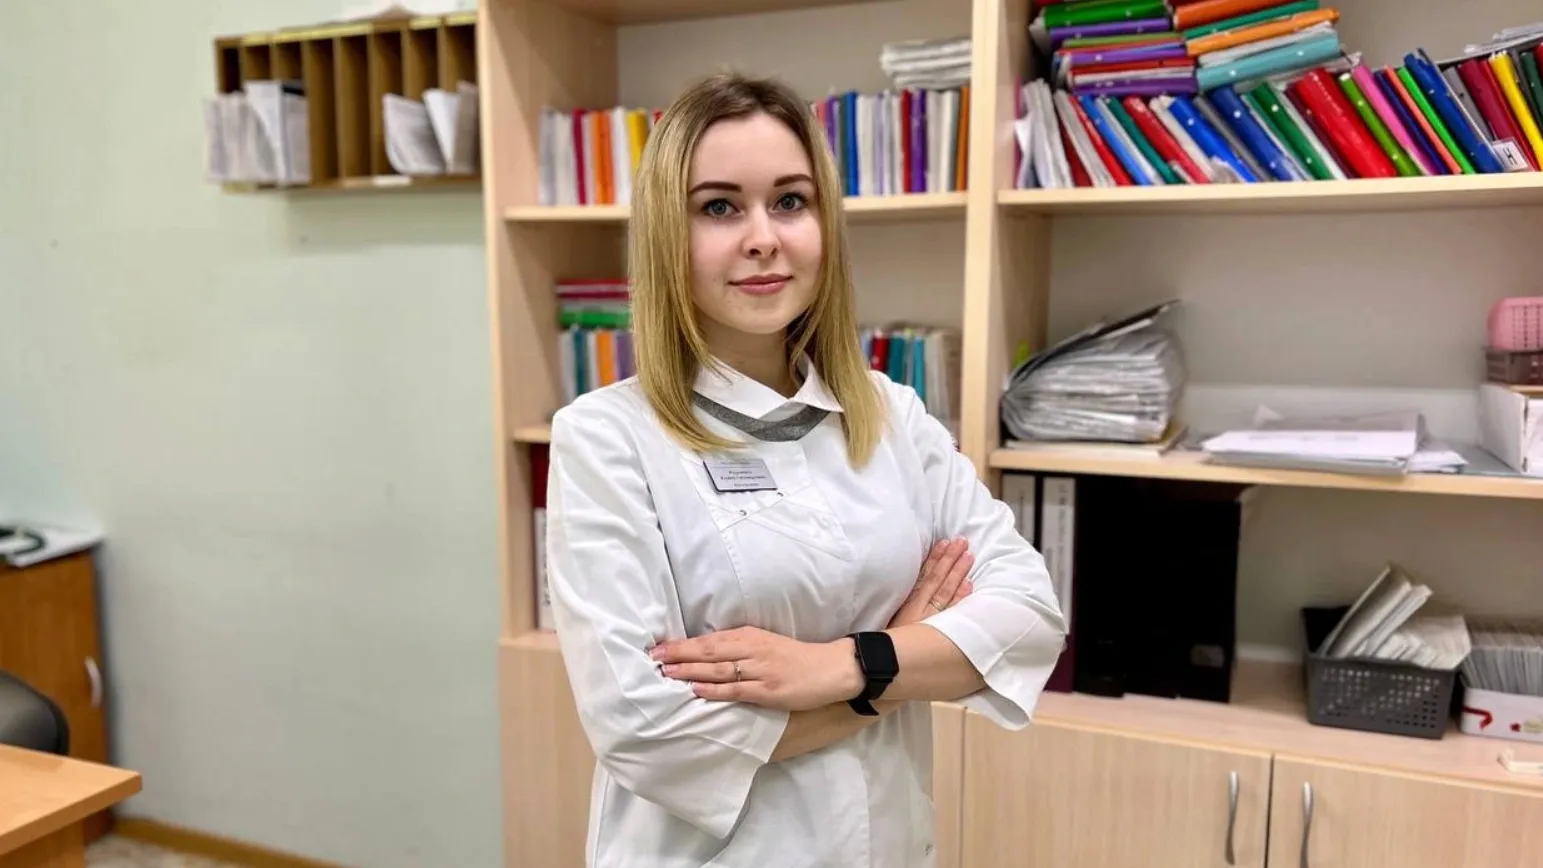 Терапевт Алина Радченко смогла поставить сложный диагноз пациентке. Фото: t.me/depzdrav89